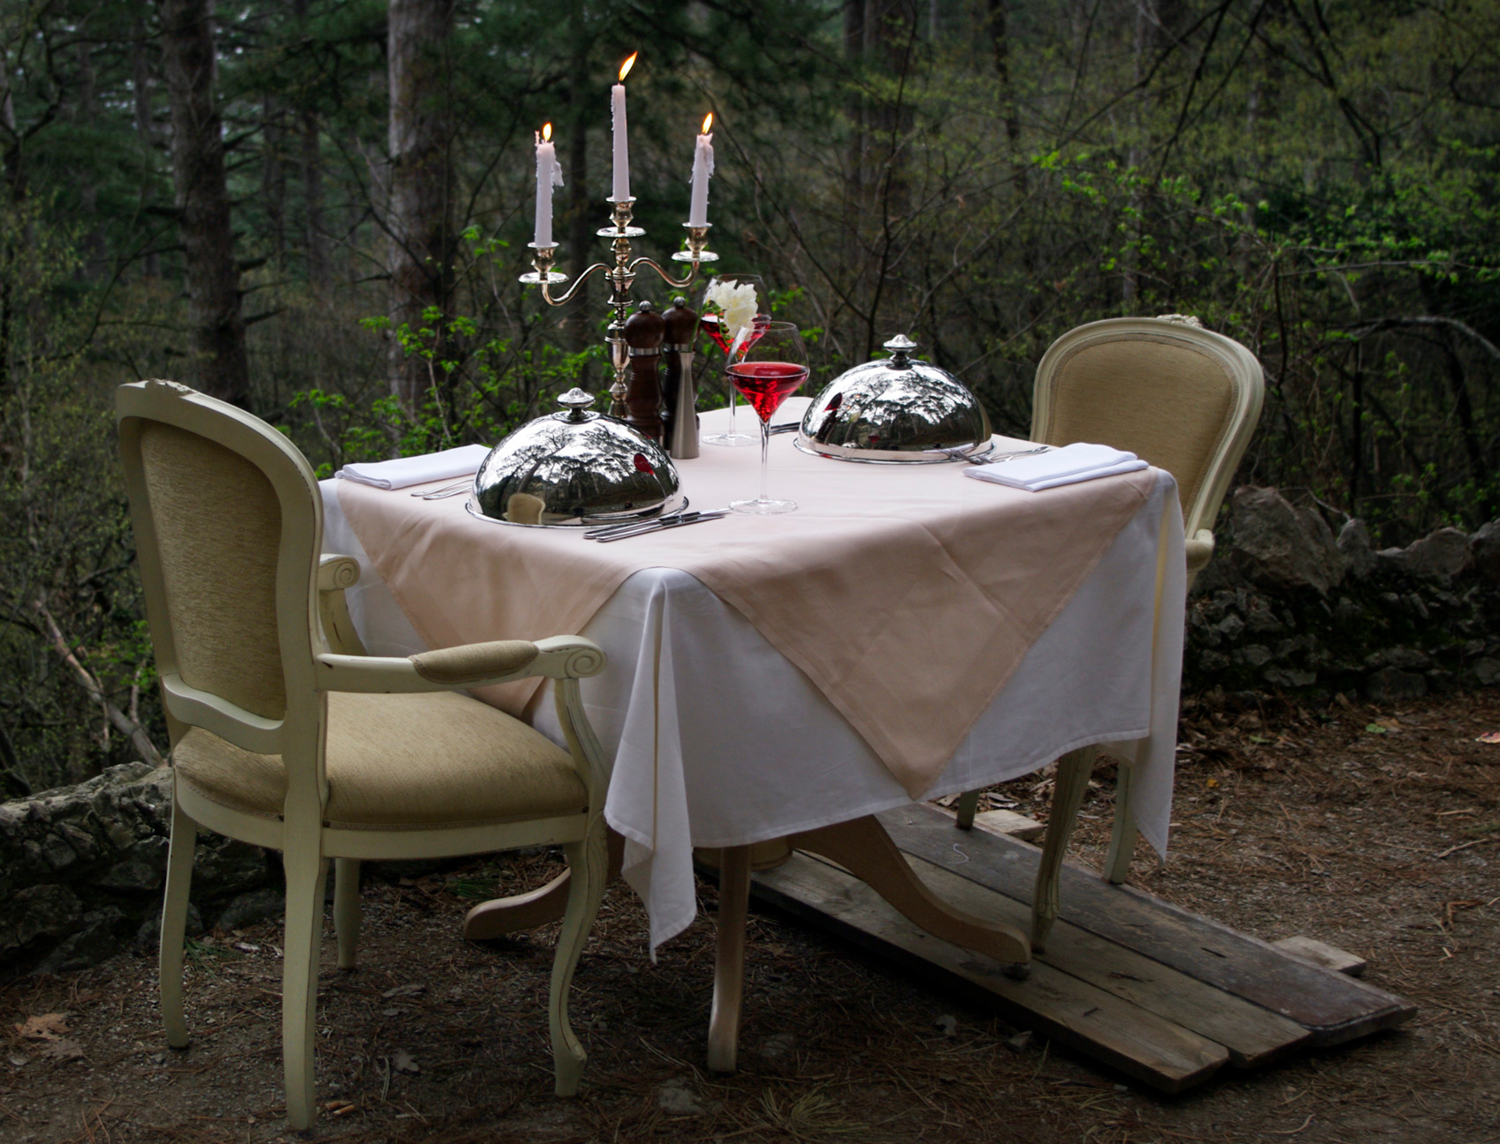 Всё готово для романтического ужина в лесу, но...